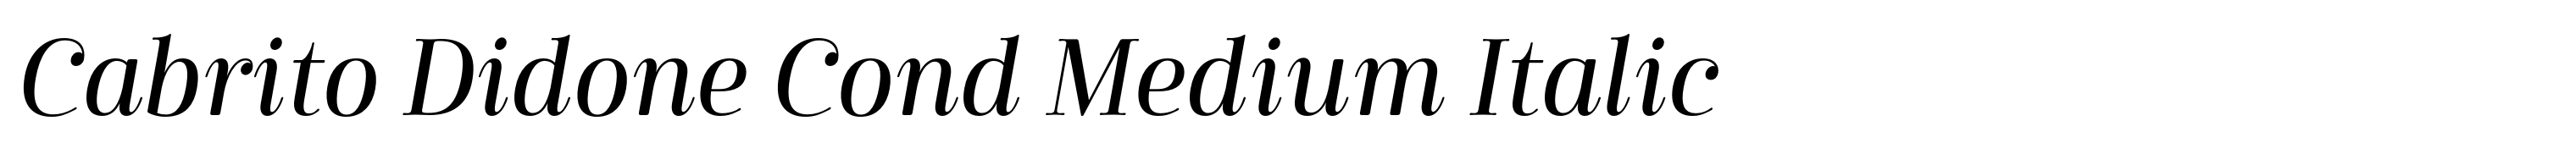 Cabrito Didone Cond Medium Italic